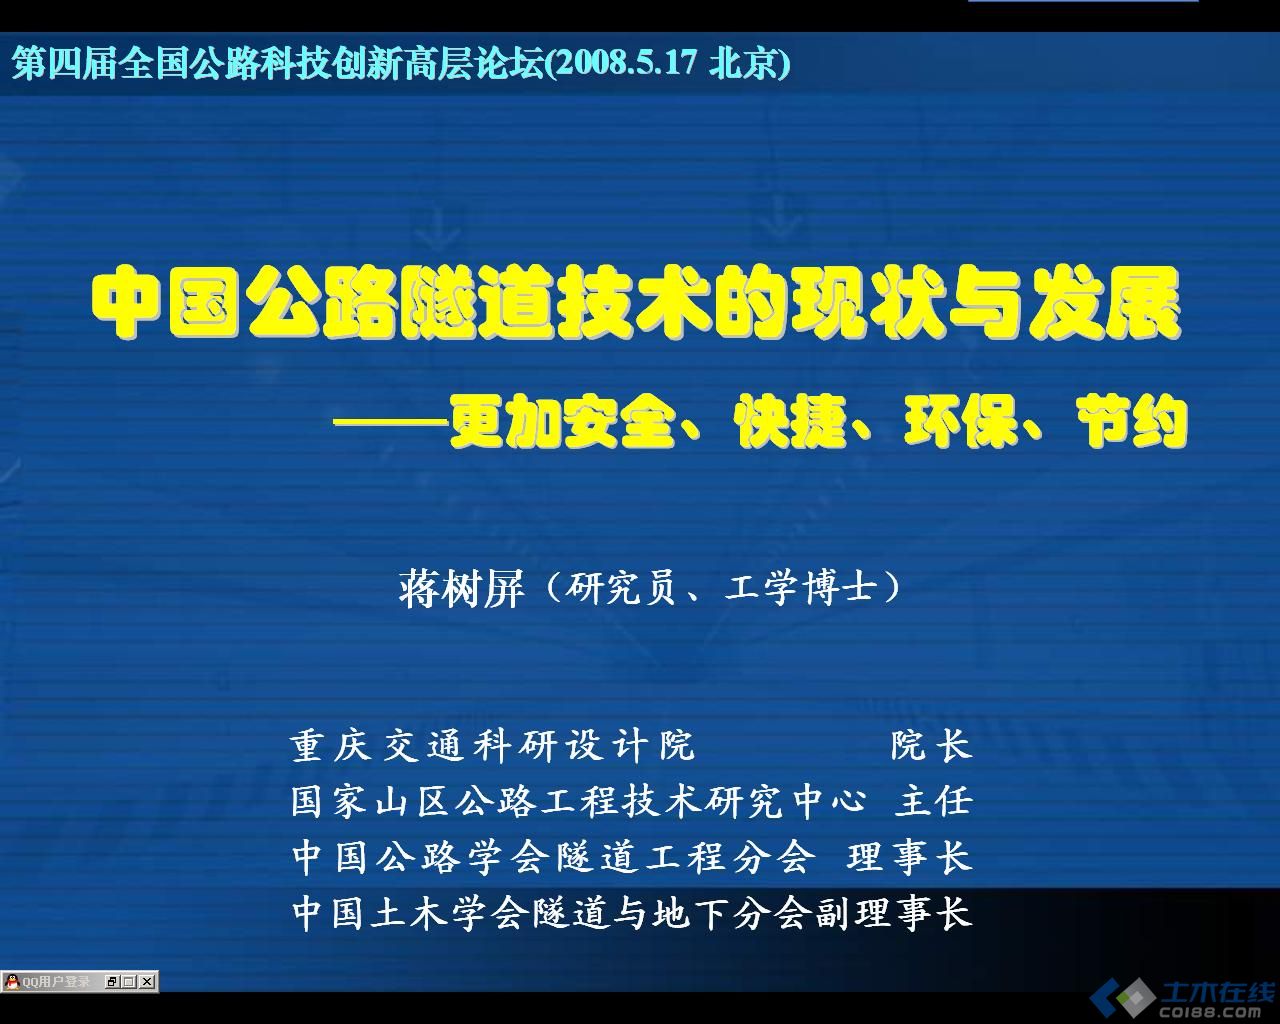 中国公路隧道建设技术的现状和发展 ——更加安全、快捷、环保、节约（蒋树屏）.JPG